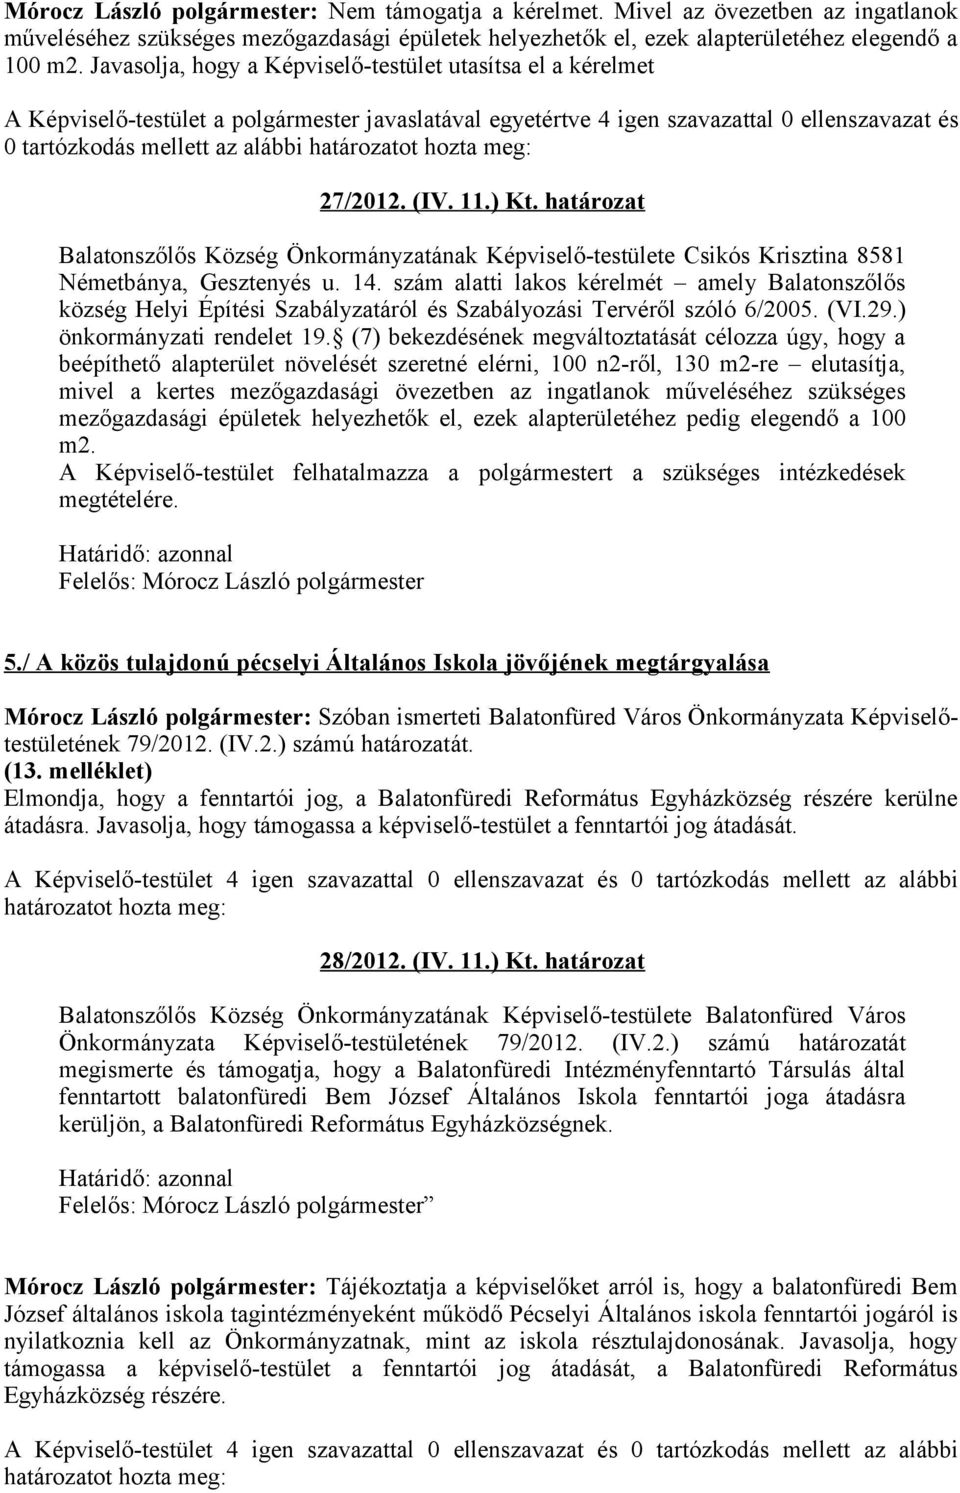 14. szám alatti lakos kérelmét amely Balatonszőlős község Helyi Építési Szabályzatáról és Szabályozási Tervéről szóló 6/2005. (VI.29.) önkormányzati rendelet 19.